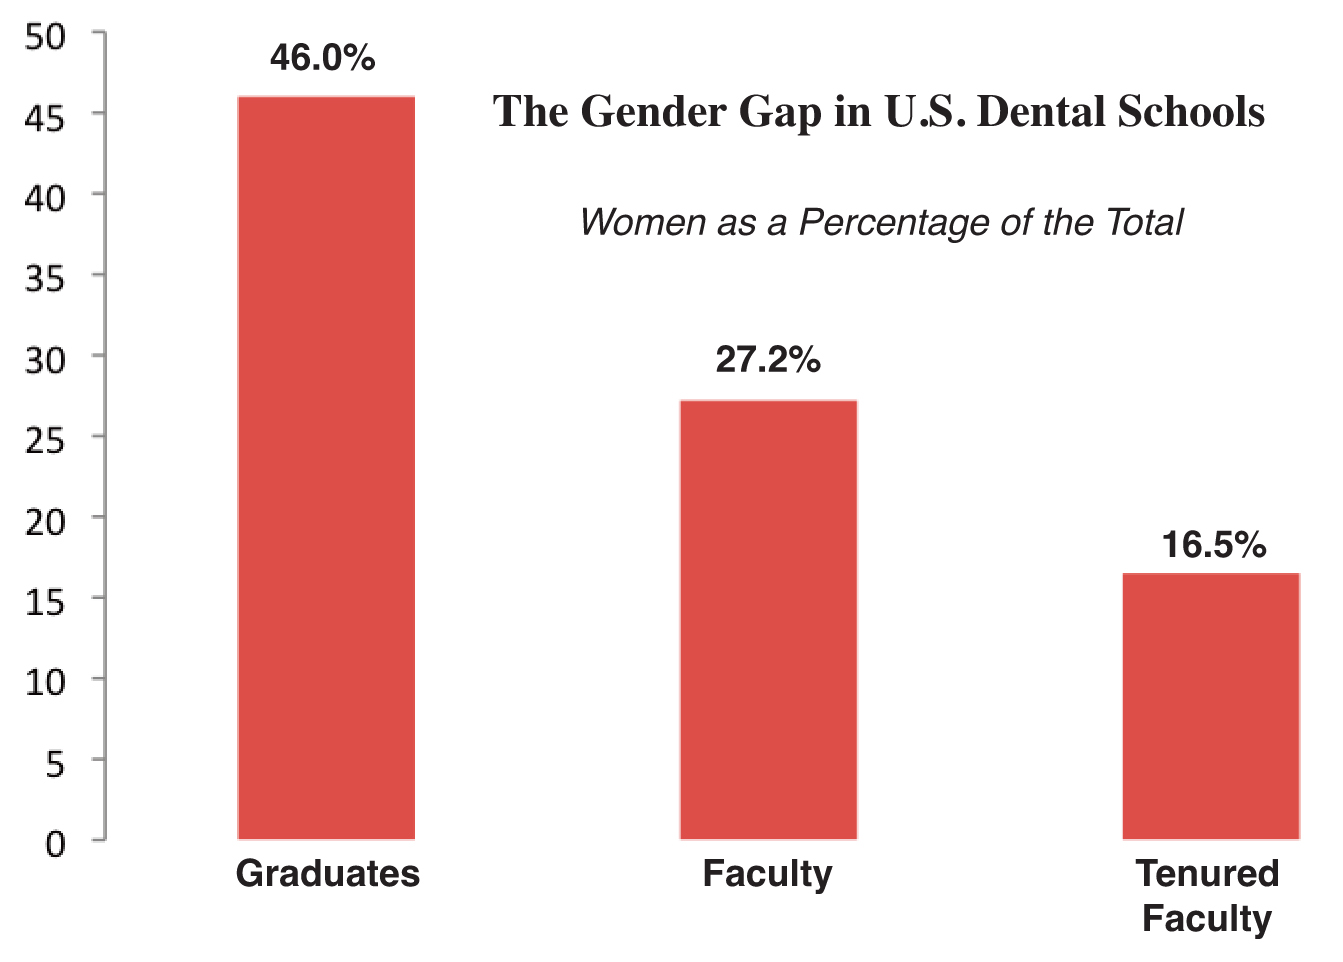 The Huge Gender Gap in U.S. Dental School Faculty Is Hard to Swallow